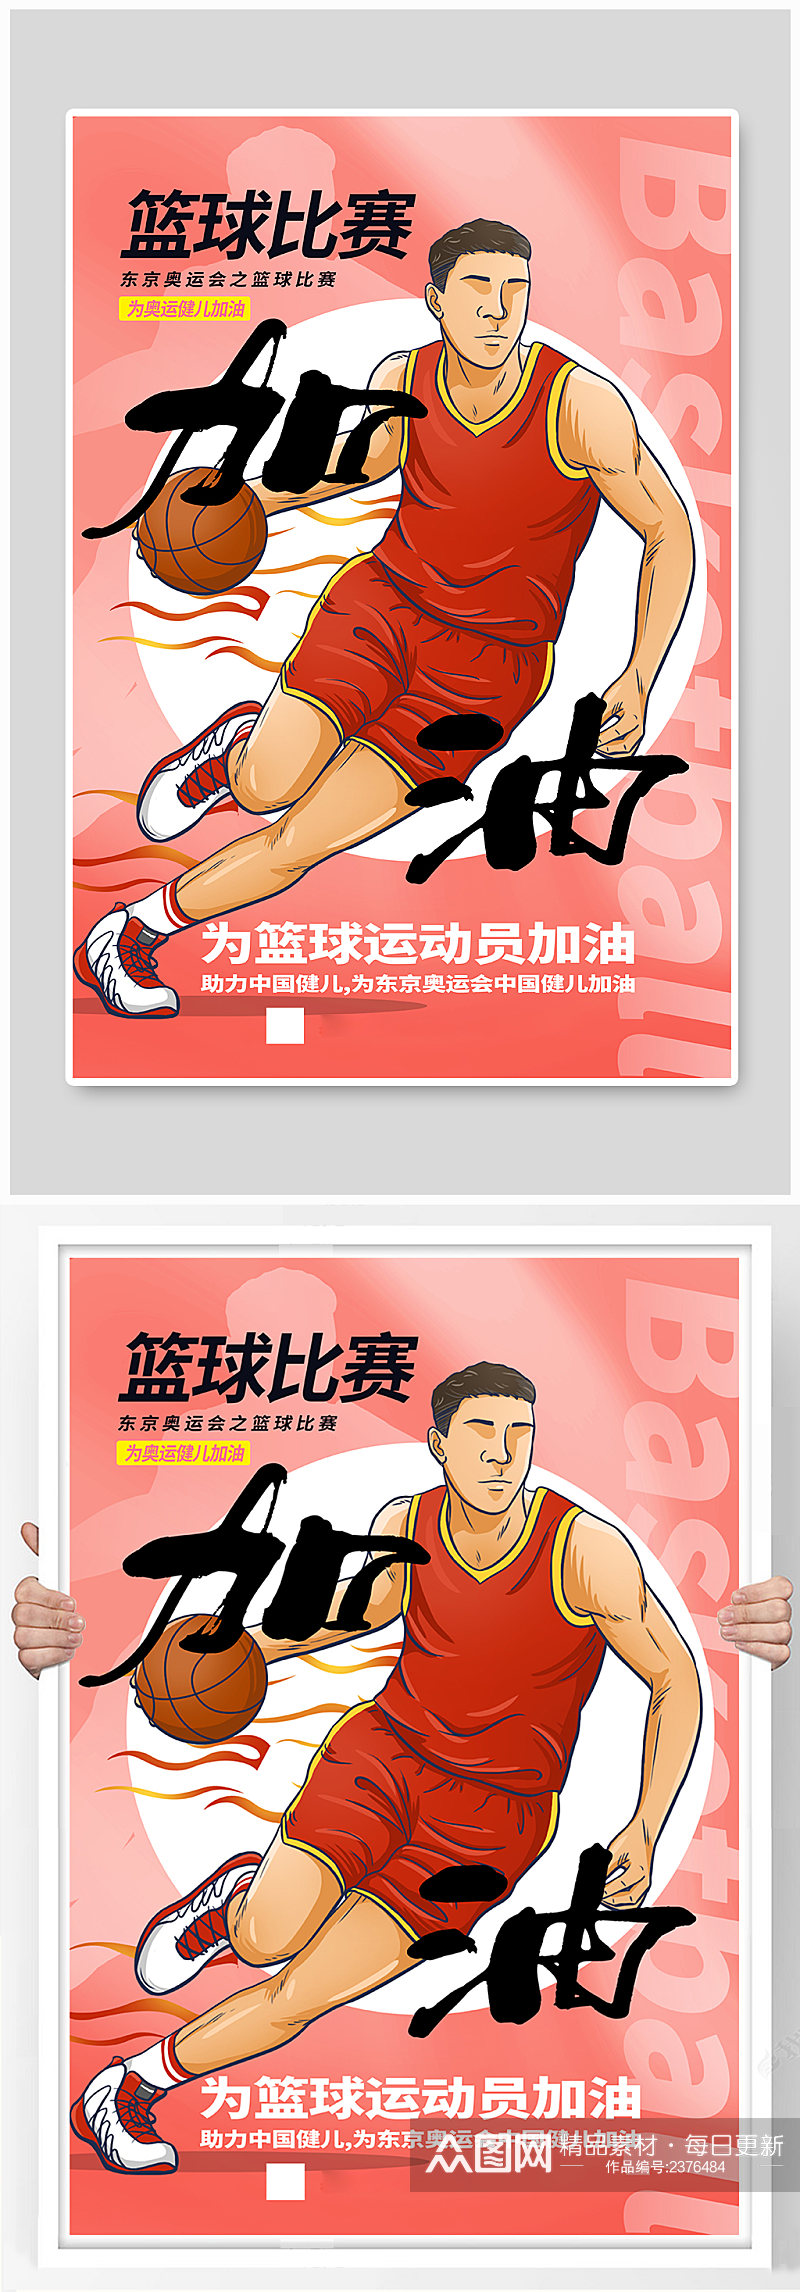 篮球比赛之东京奥运会海报素材